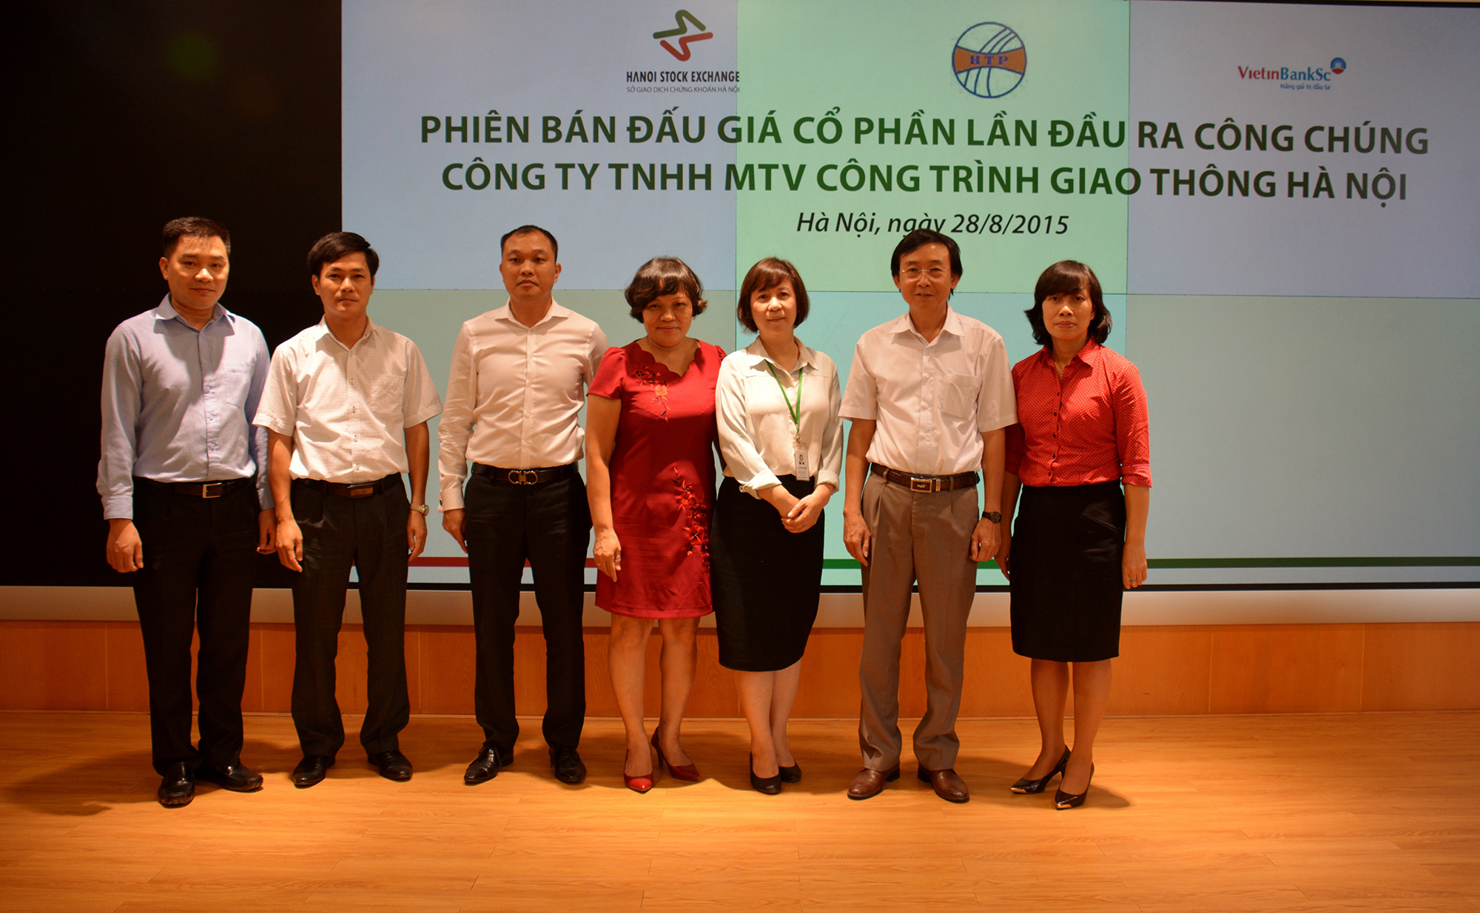  Phó Chủ tịch HĐQT kiêm Tổng Giám đốc HNX Nguyễn Thị Hoàng Lan (thứ 3 từ phải sang) chụp ảnh kỷ niệm cùng với lãnh đạo Công ty TNHH MTV Công trình Giao thông Hà Nội.